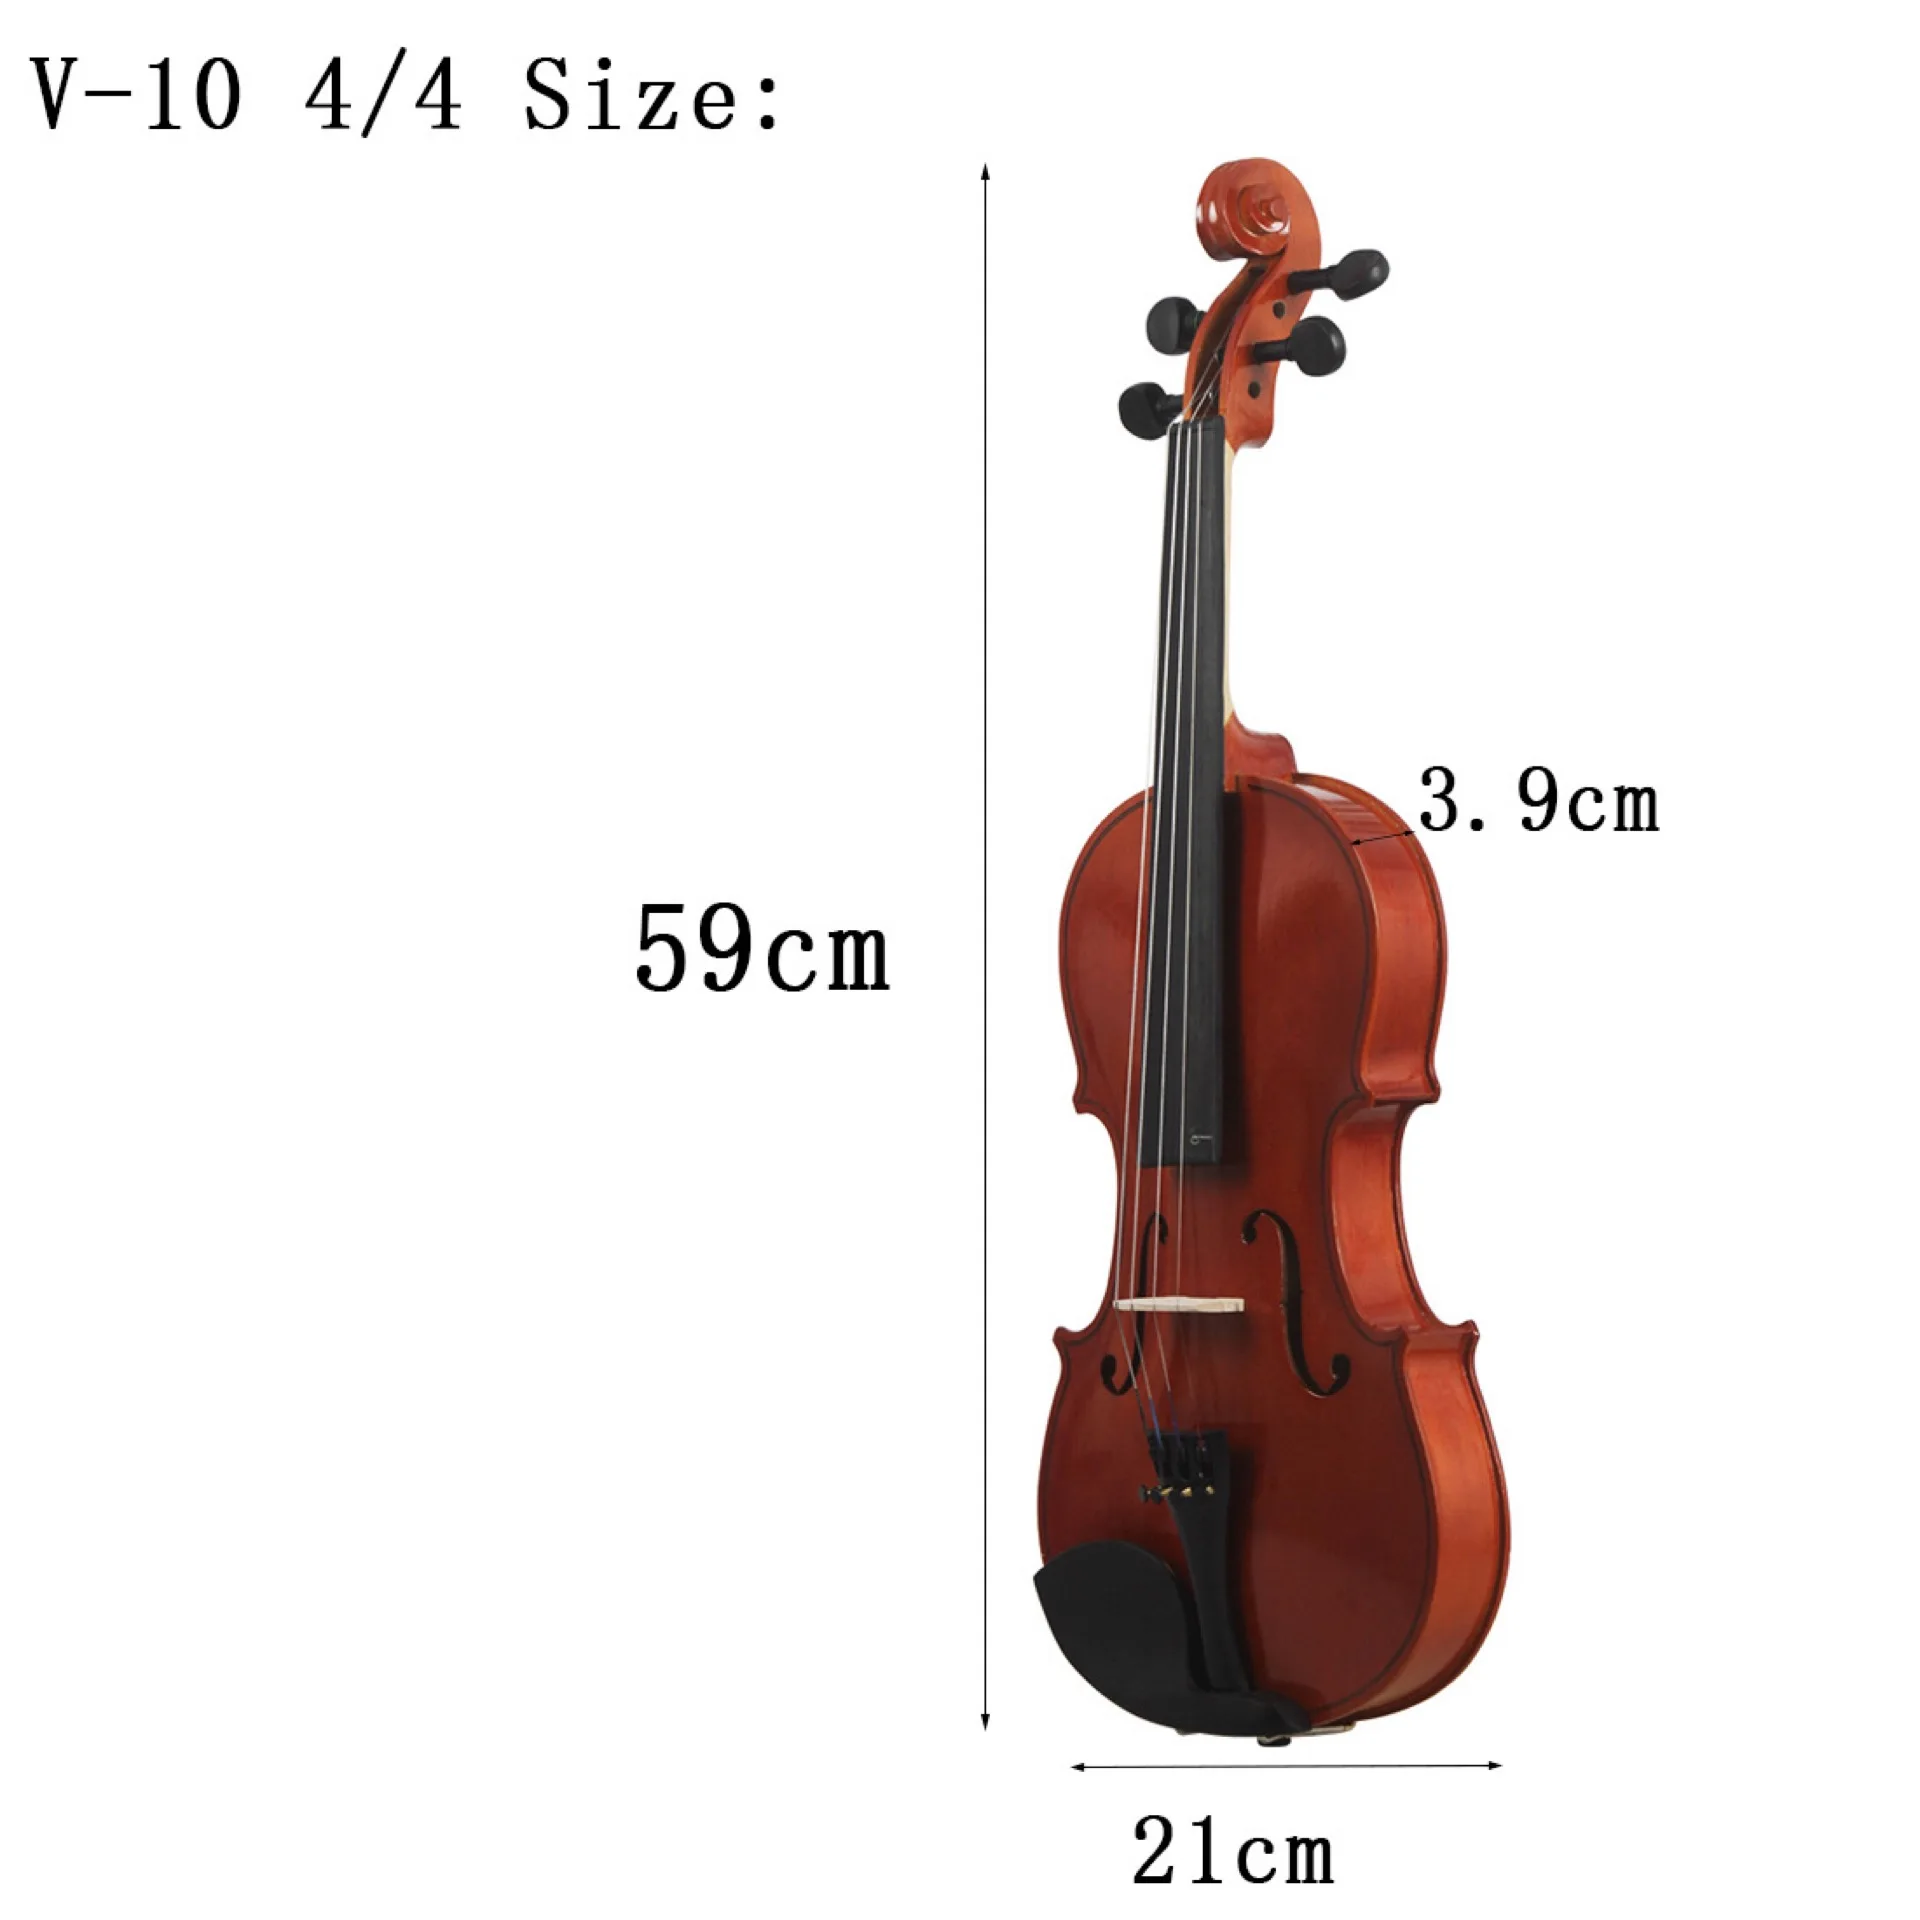 Выбор скрипки 4 4. Размер скрипки 4/4. Скрипка 1/4 размер. Размеры скрипки 4/4 в сантиметрах. Скрипка 3/4 размер.